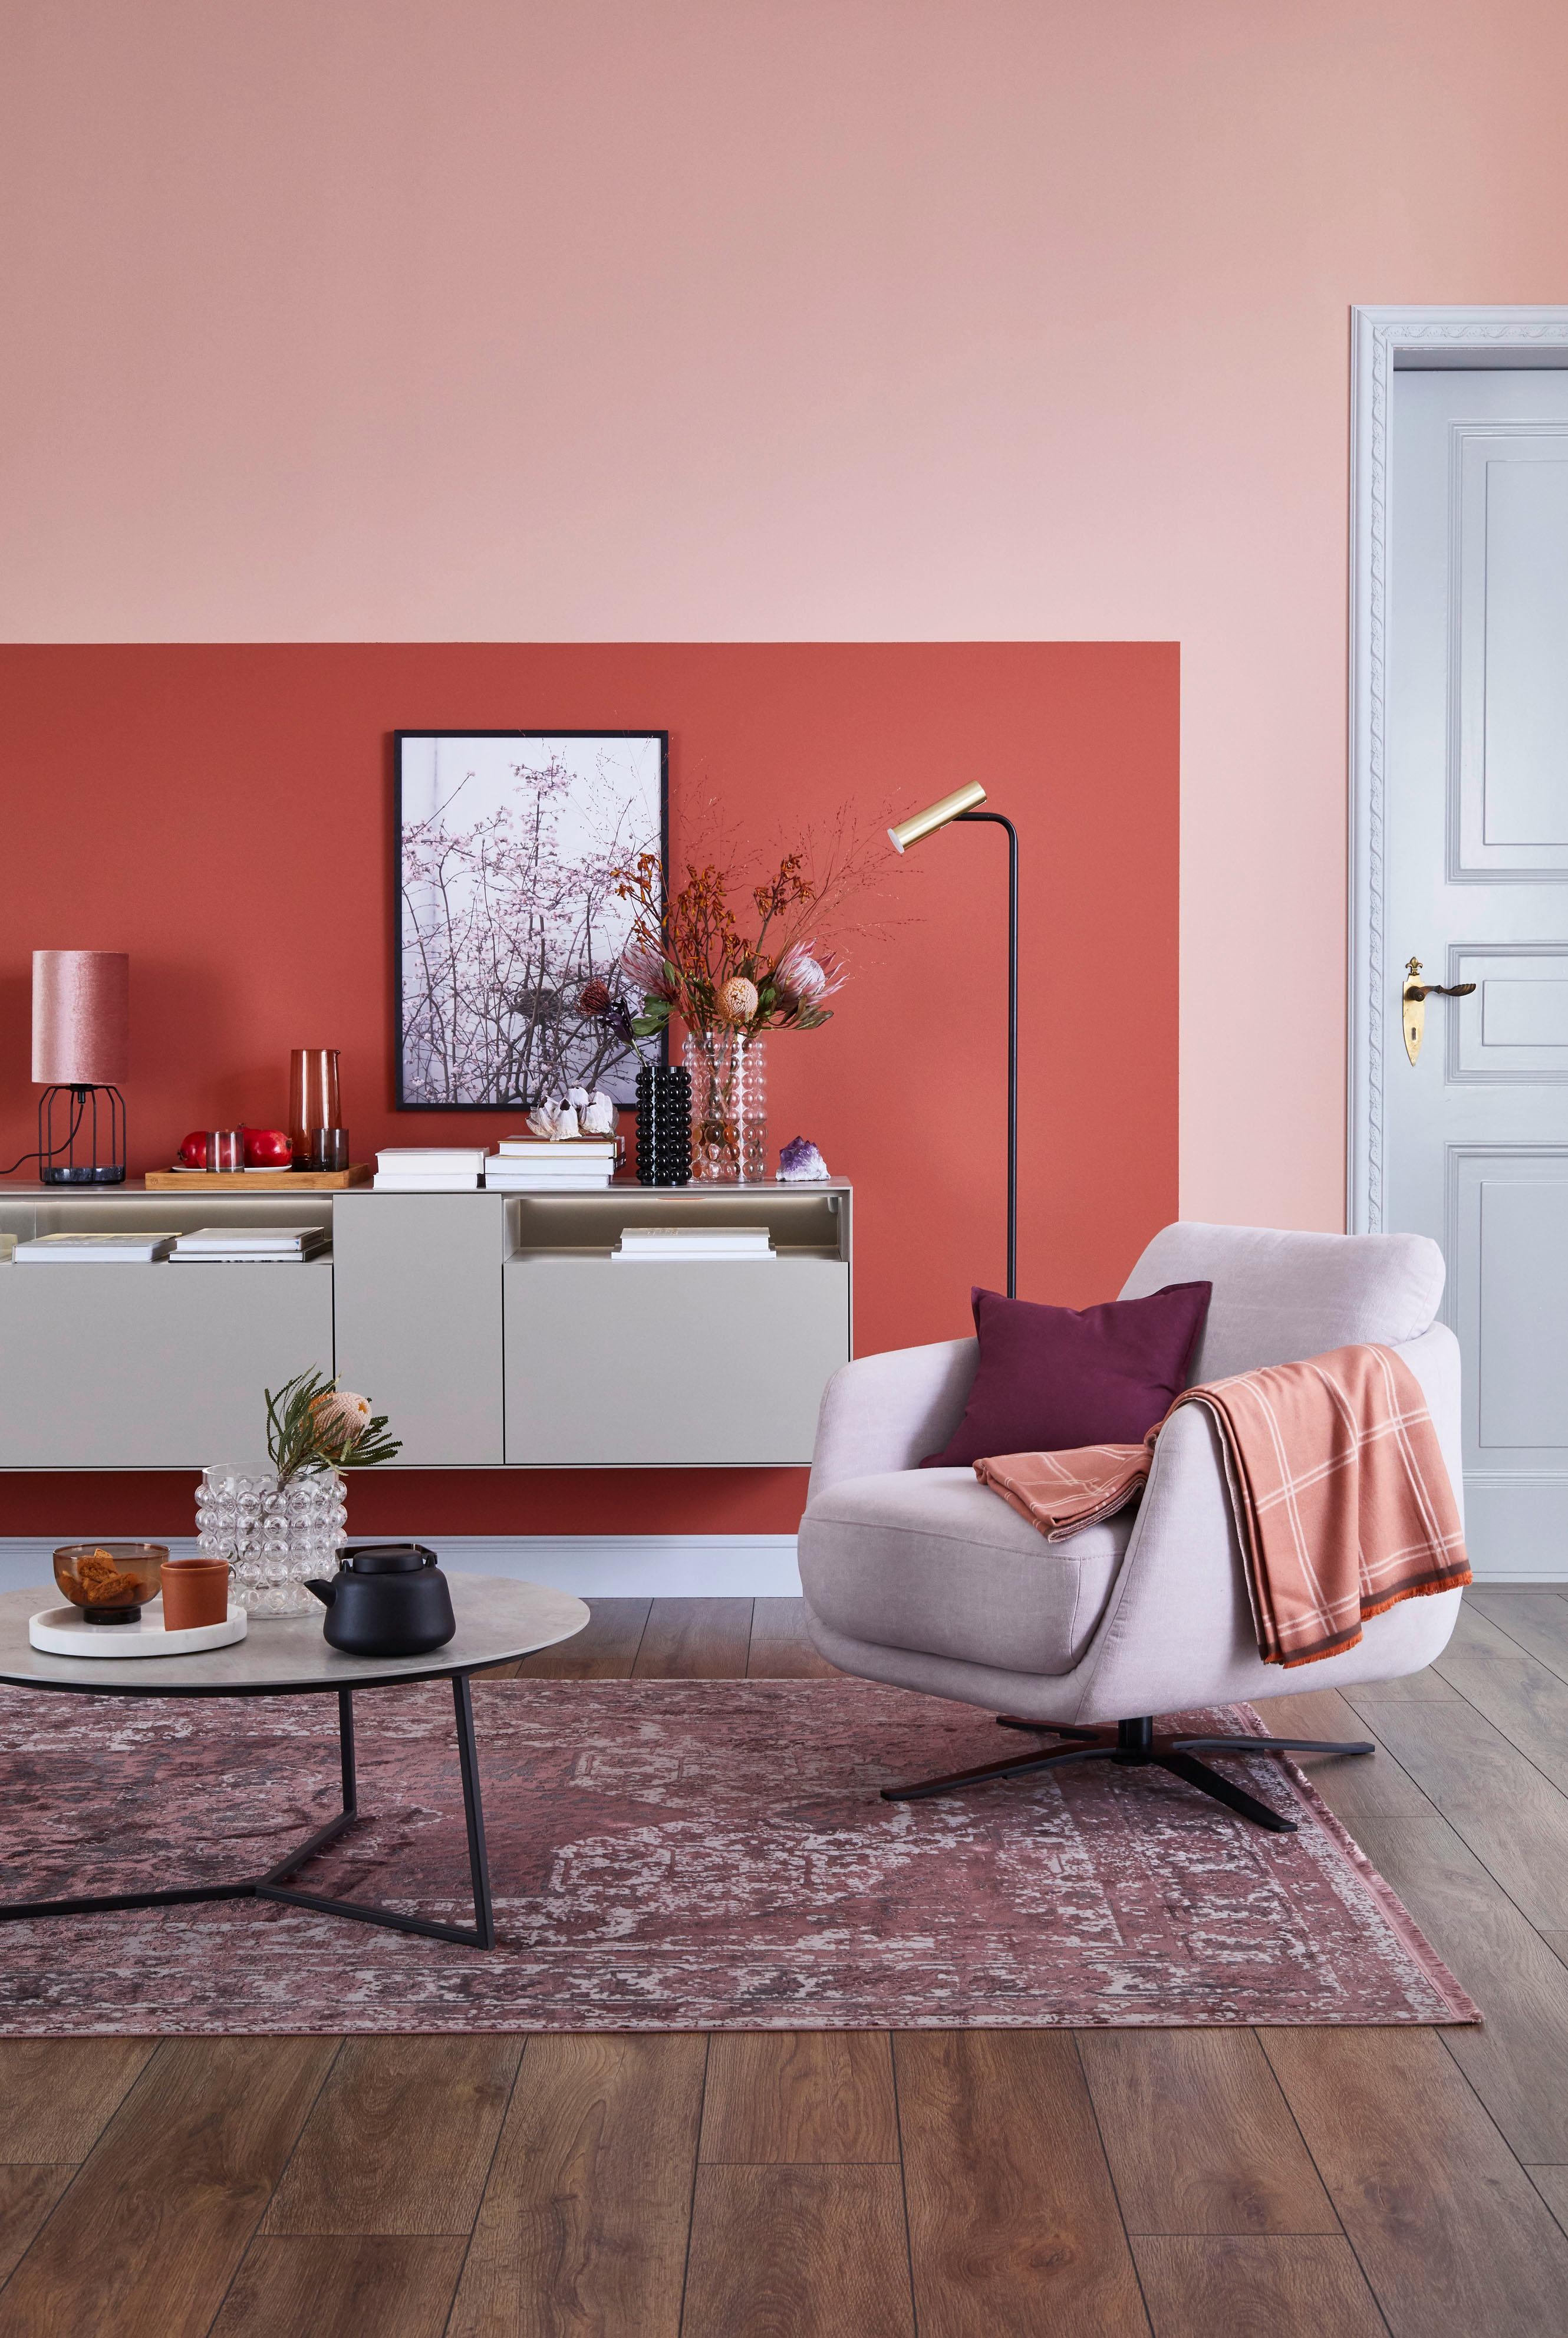 Elegante Kurven und feminine Farben!
Wir lieben den rosaroten Wohntrend. #sessel #feminin #wohnzimmer #rosa